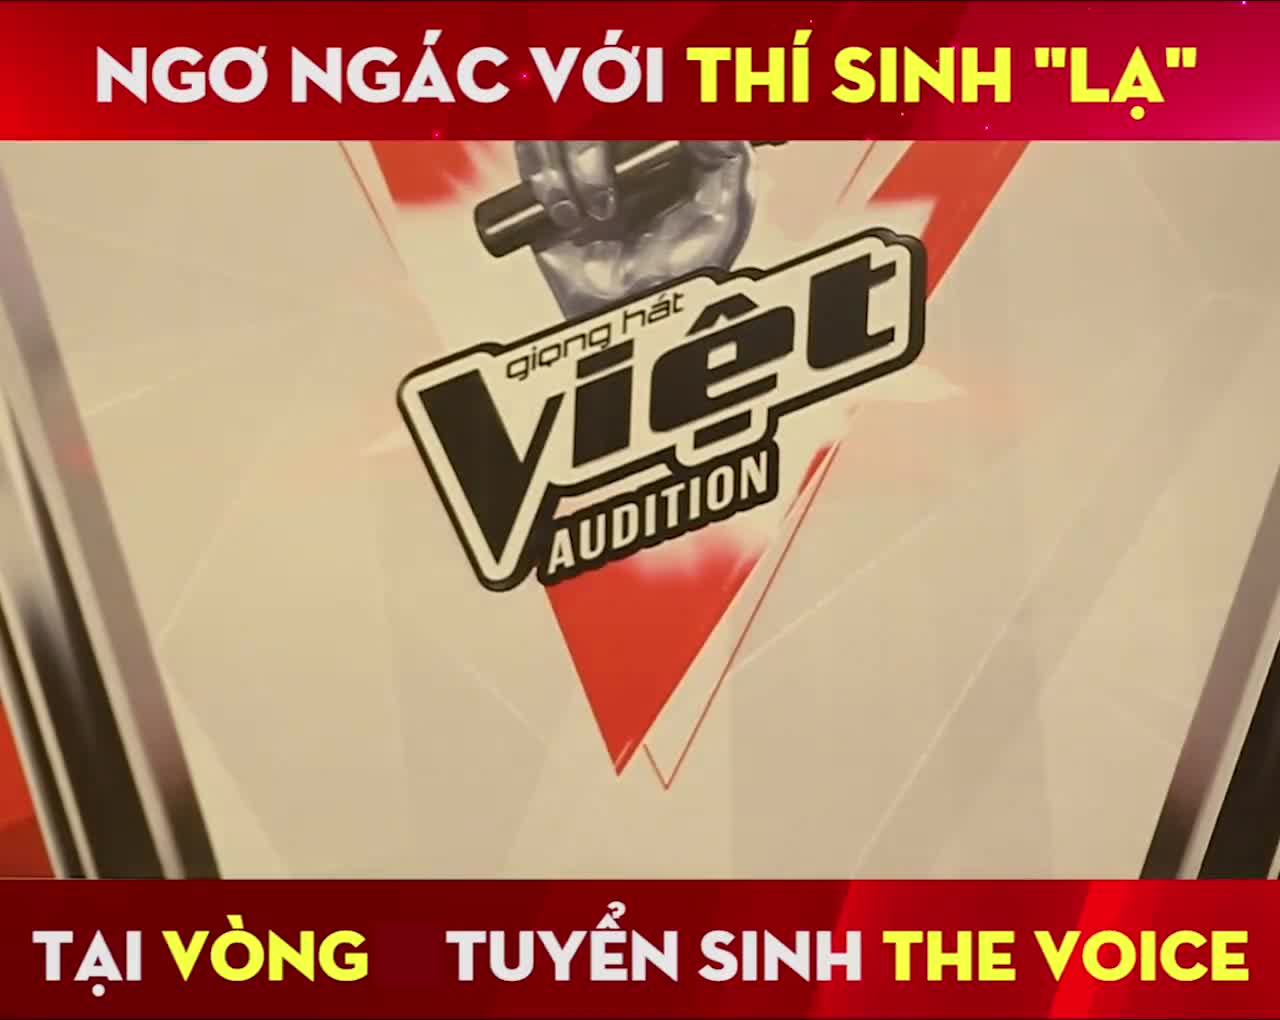 Giọng hát Việt Audition: Giám khảo đứng hình trước thí sinh đi thi quên lời